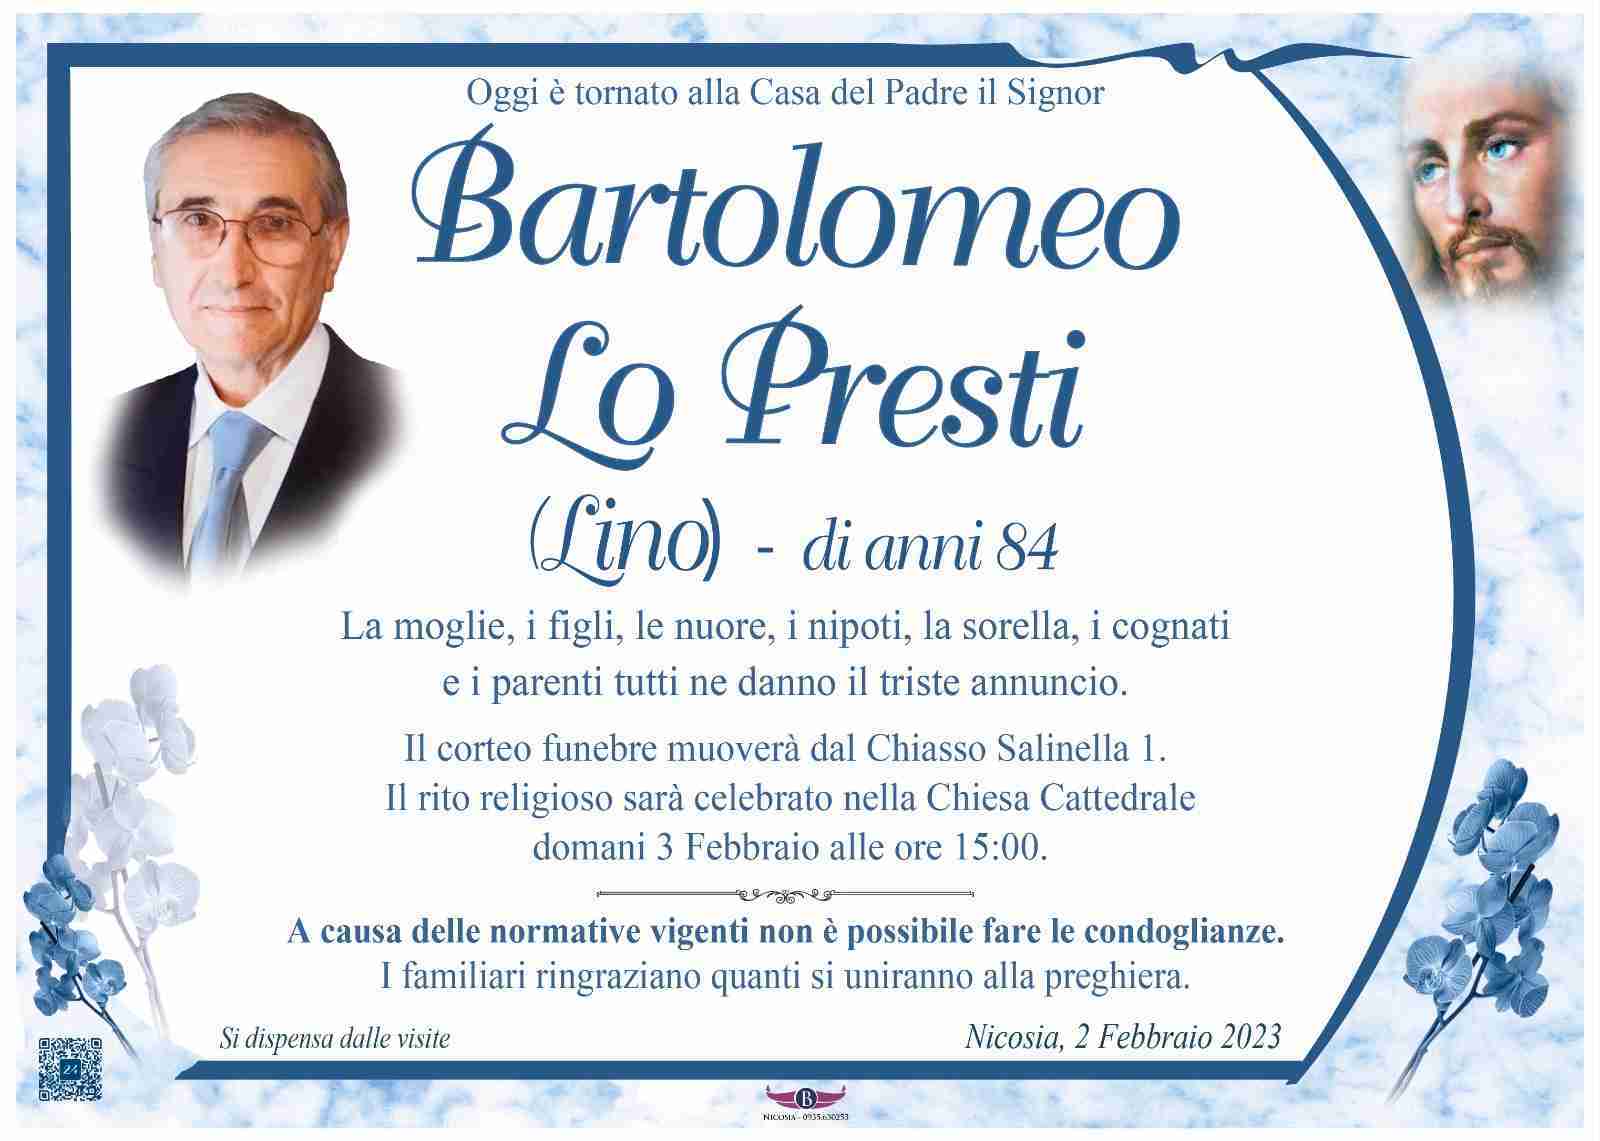 Bartolomeo Lo Presti